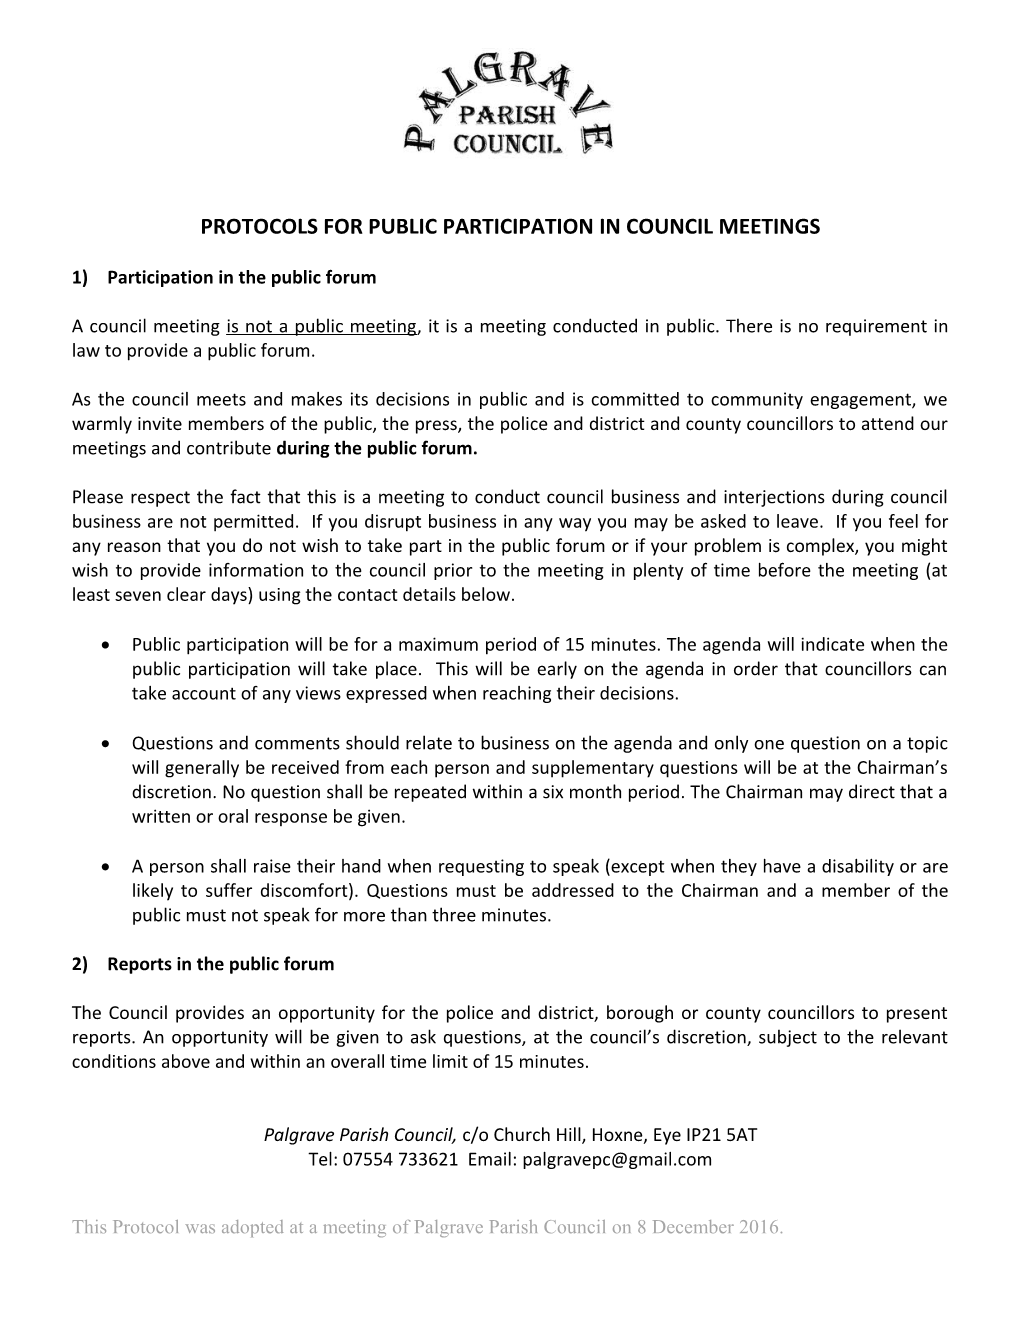 Protocols for Public Participation